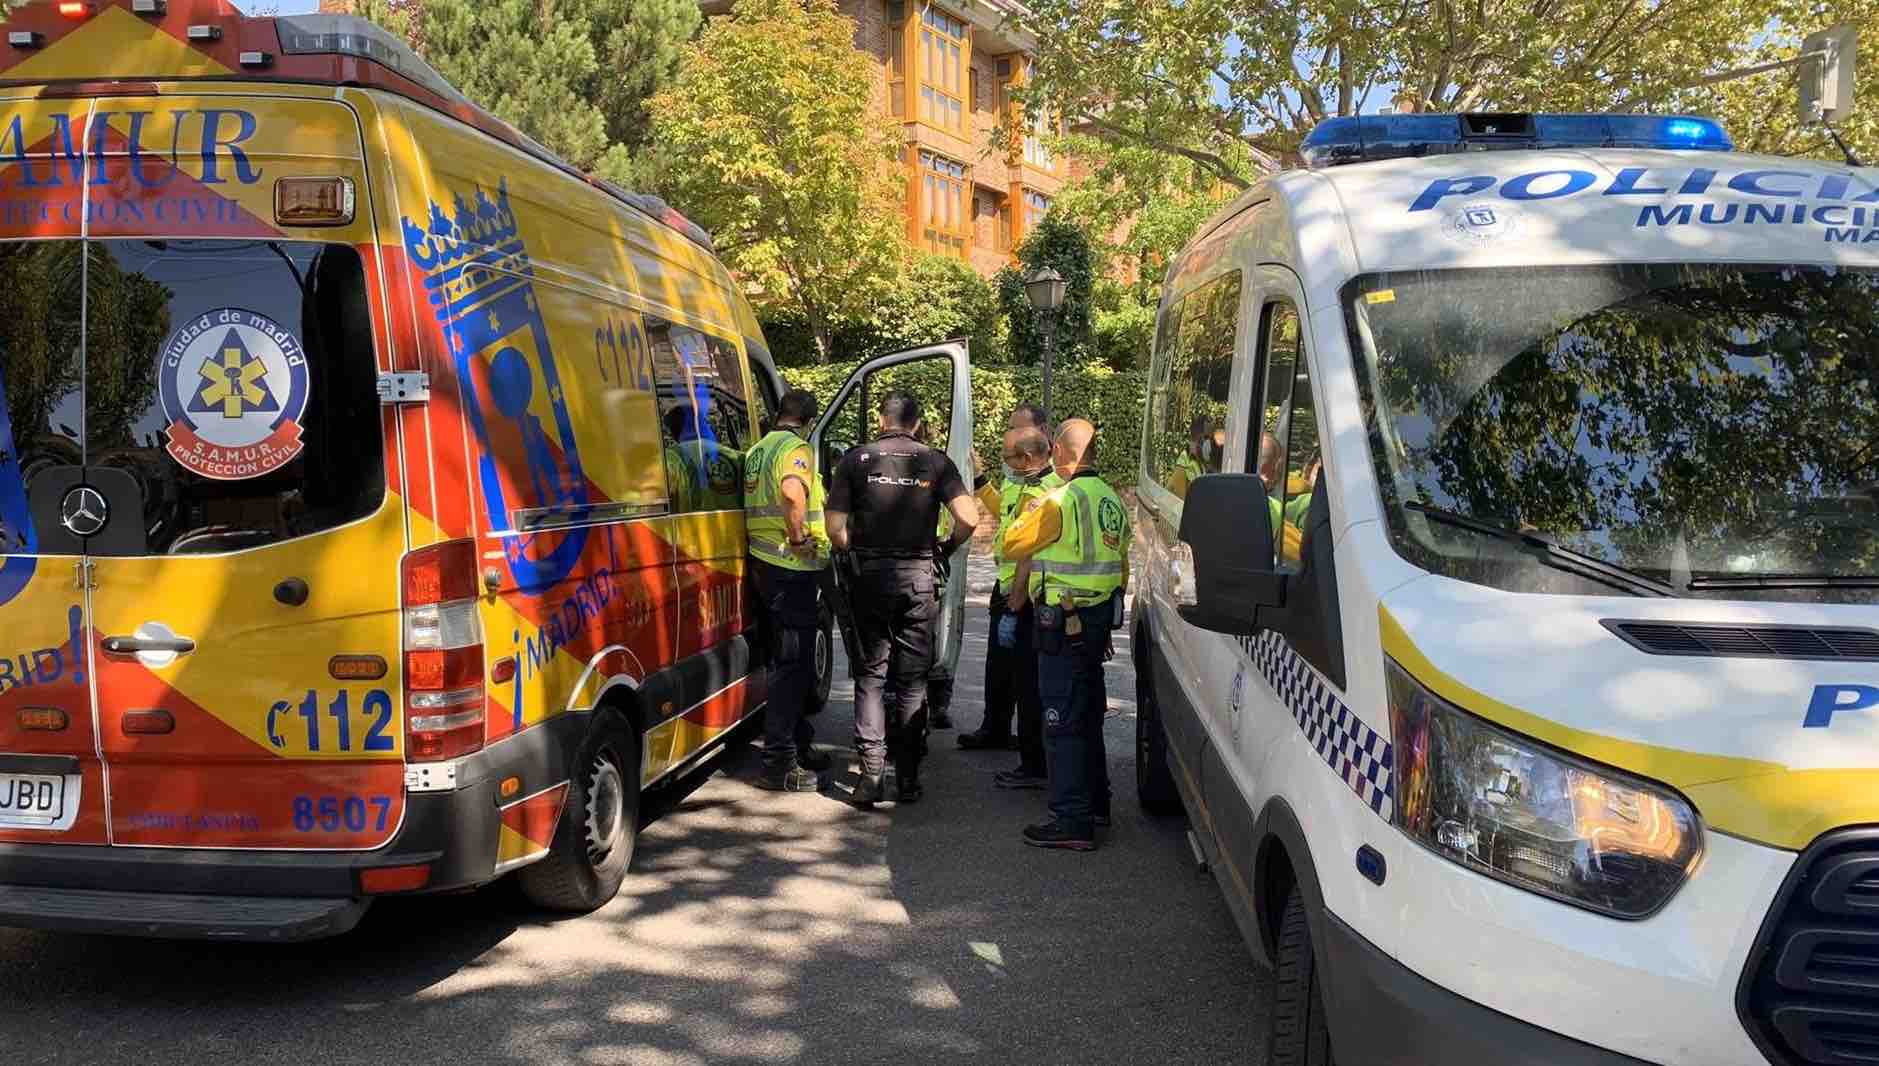 Fallece un hombre de 49 años tras ser atropellado por un autobús interurbano en Aravaca - EMERGENCIAS MADRID